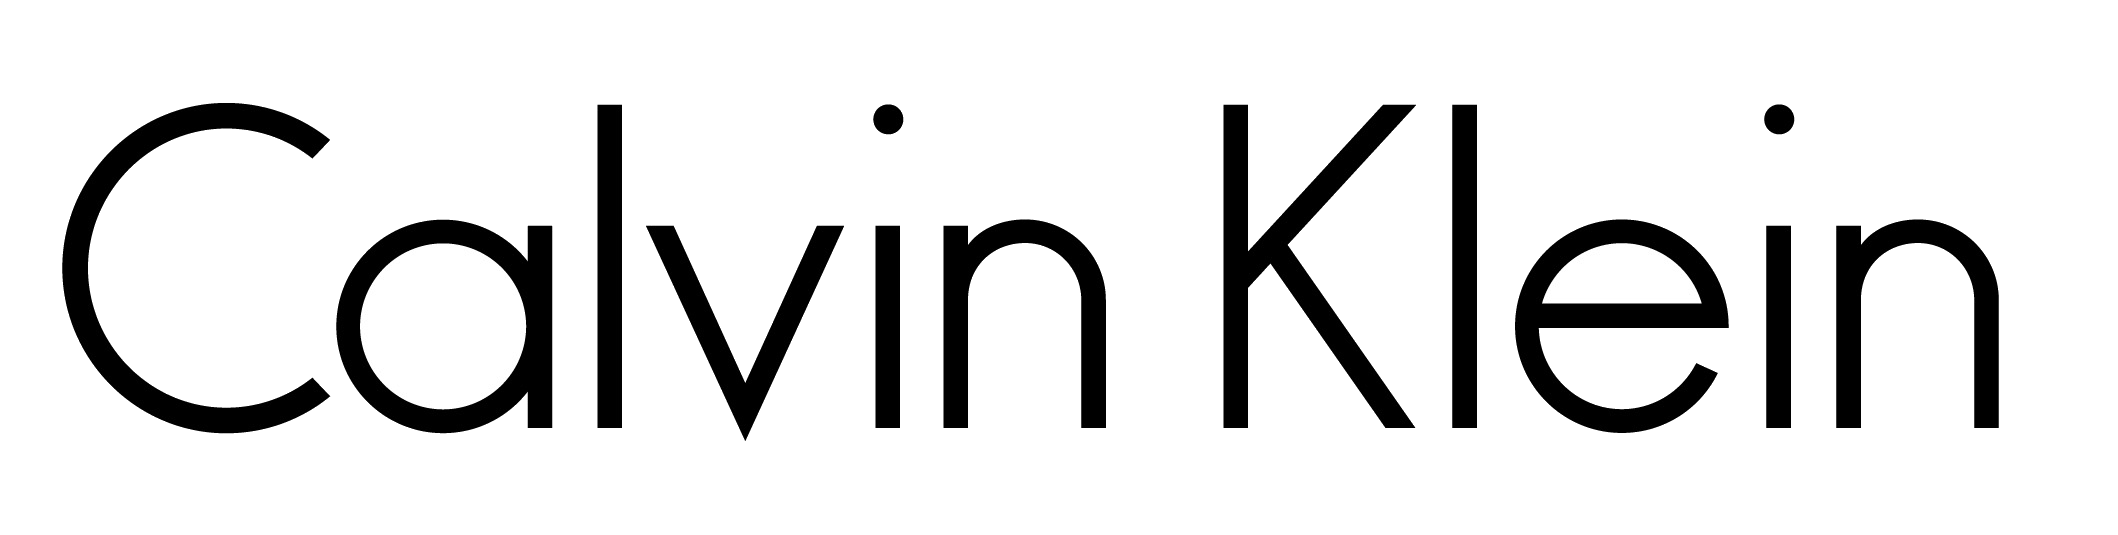 Logotipo da Calvin Klein